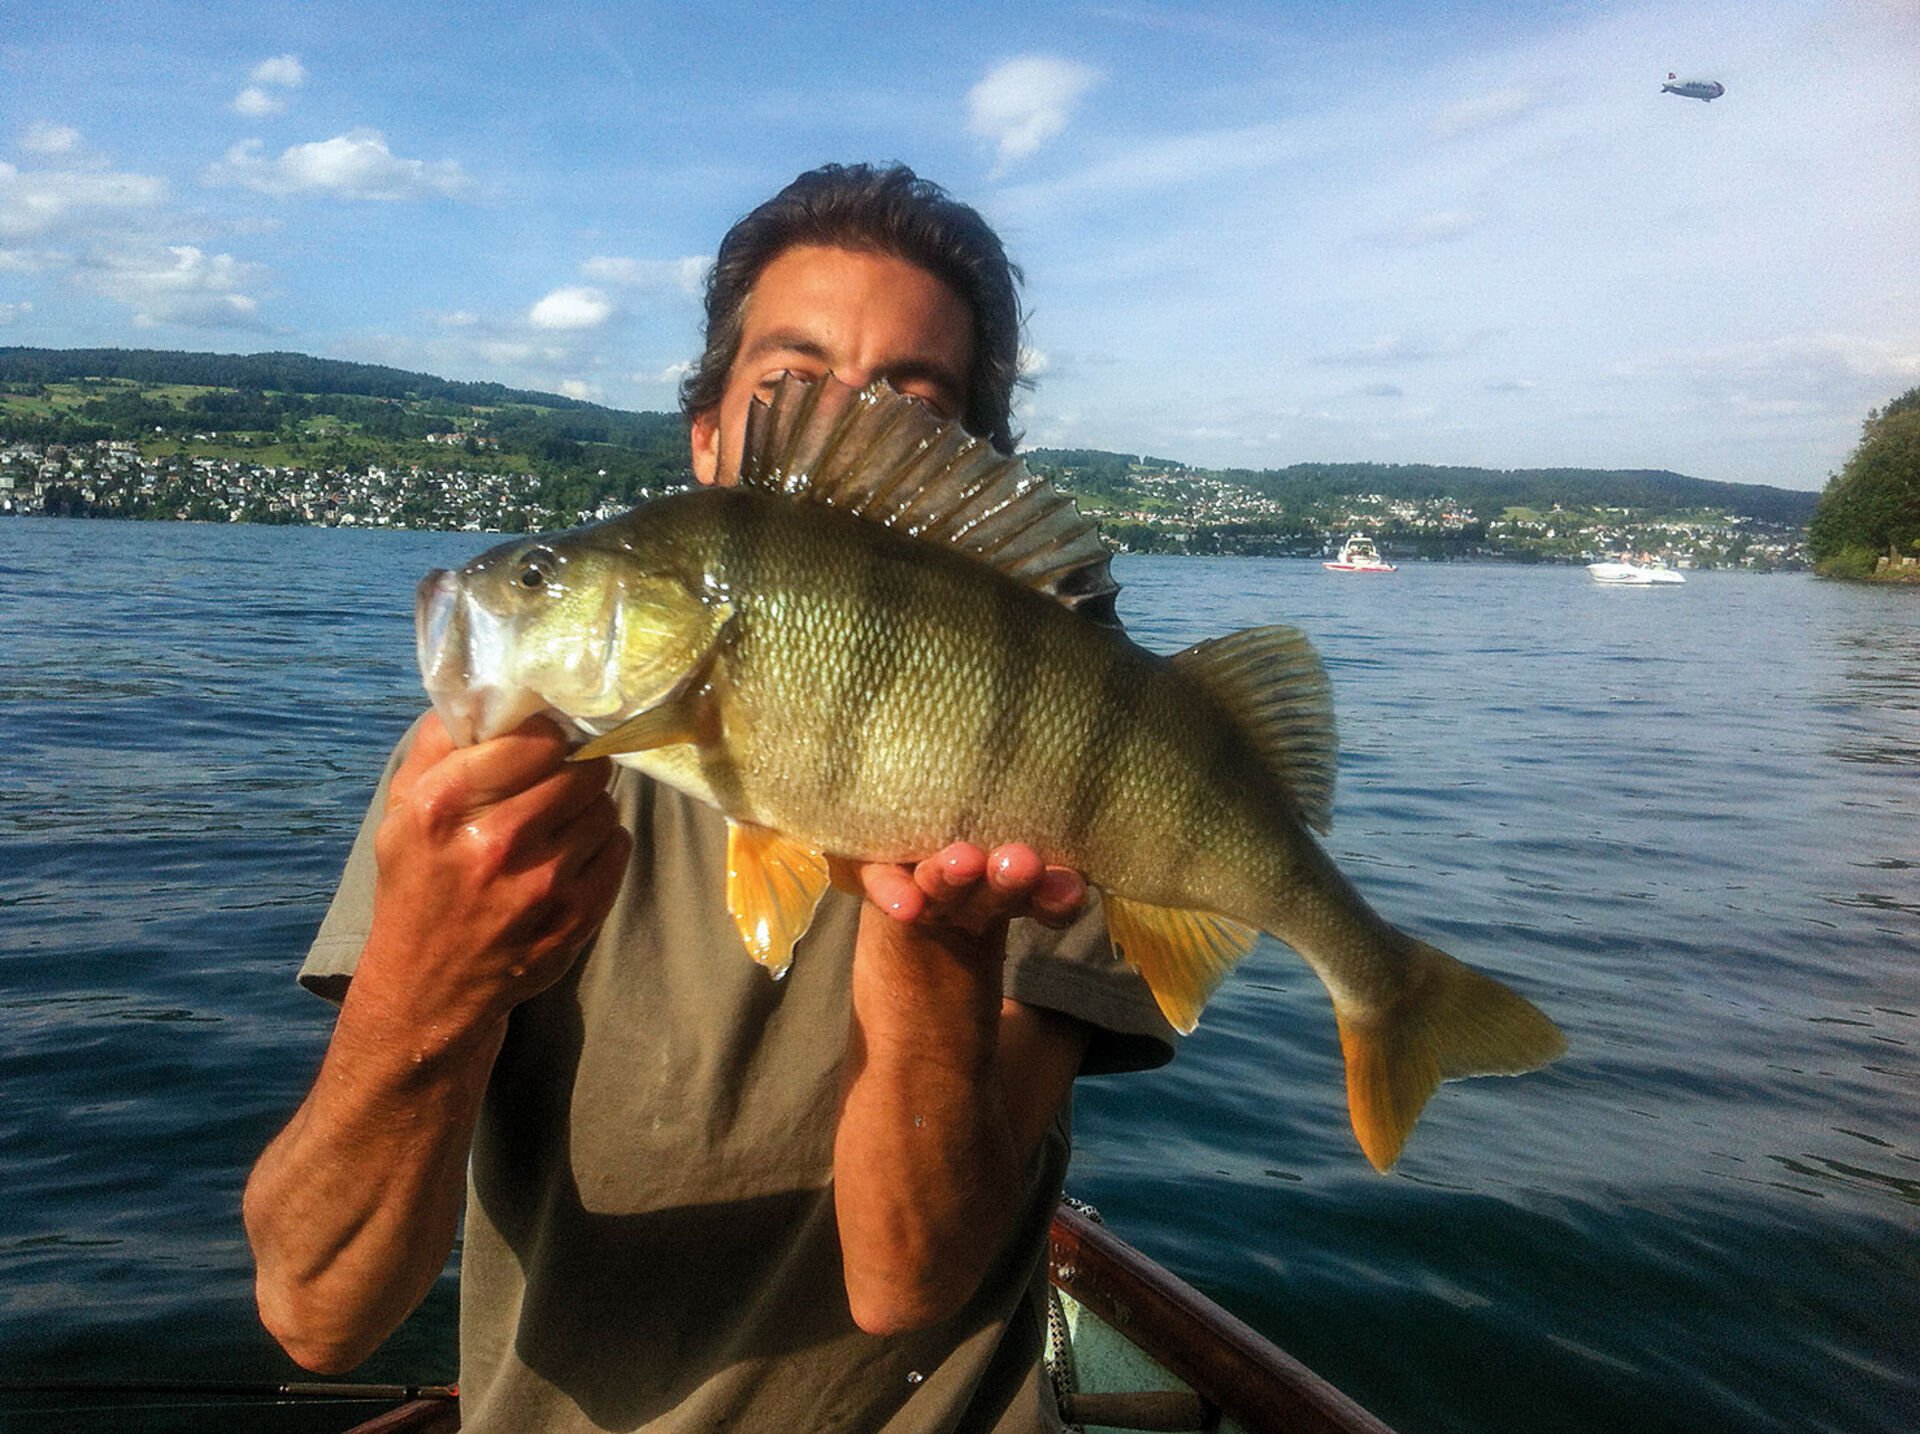  Dieser Ausnahmefisch aus dem Zürichsee ist an einem Frühsommerabend auf einen durch das Freiwasser gezupften Gummi eingestiegen. Jetzt stehen die Chancen auf einen solchen Glückstreffer besser als im Hochsommer, wenn diese Fische gesättigt und vorsichtiger sind.  